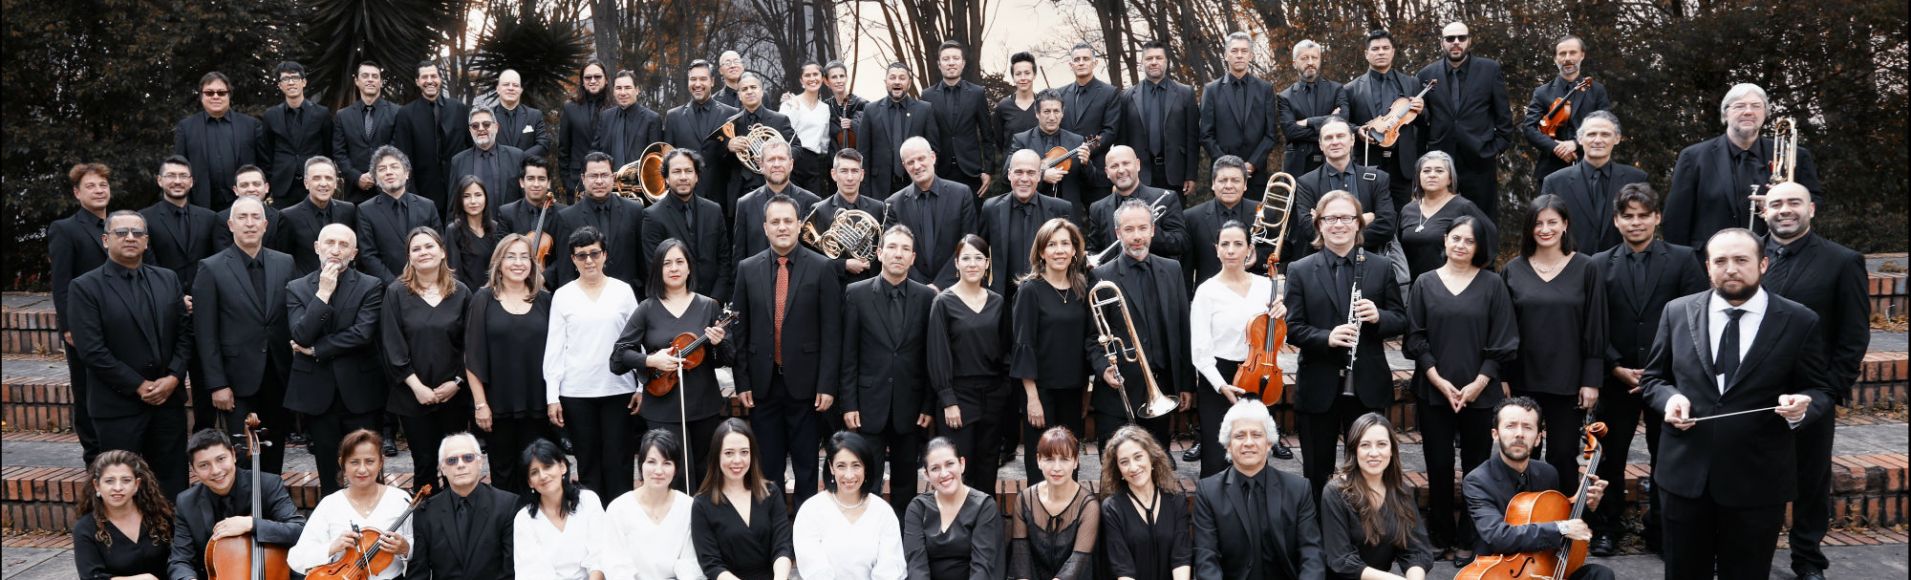 Orquesta Filarmónica de Bogotá. Director: Josep Caballé-Domenech, España. Soprano: María Hinojosa, España. Cantaor: Pere Martínez, España